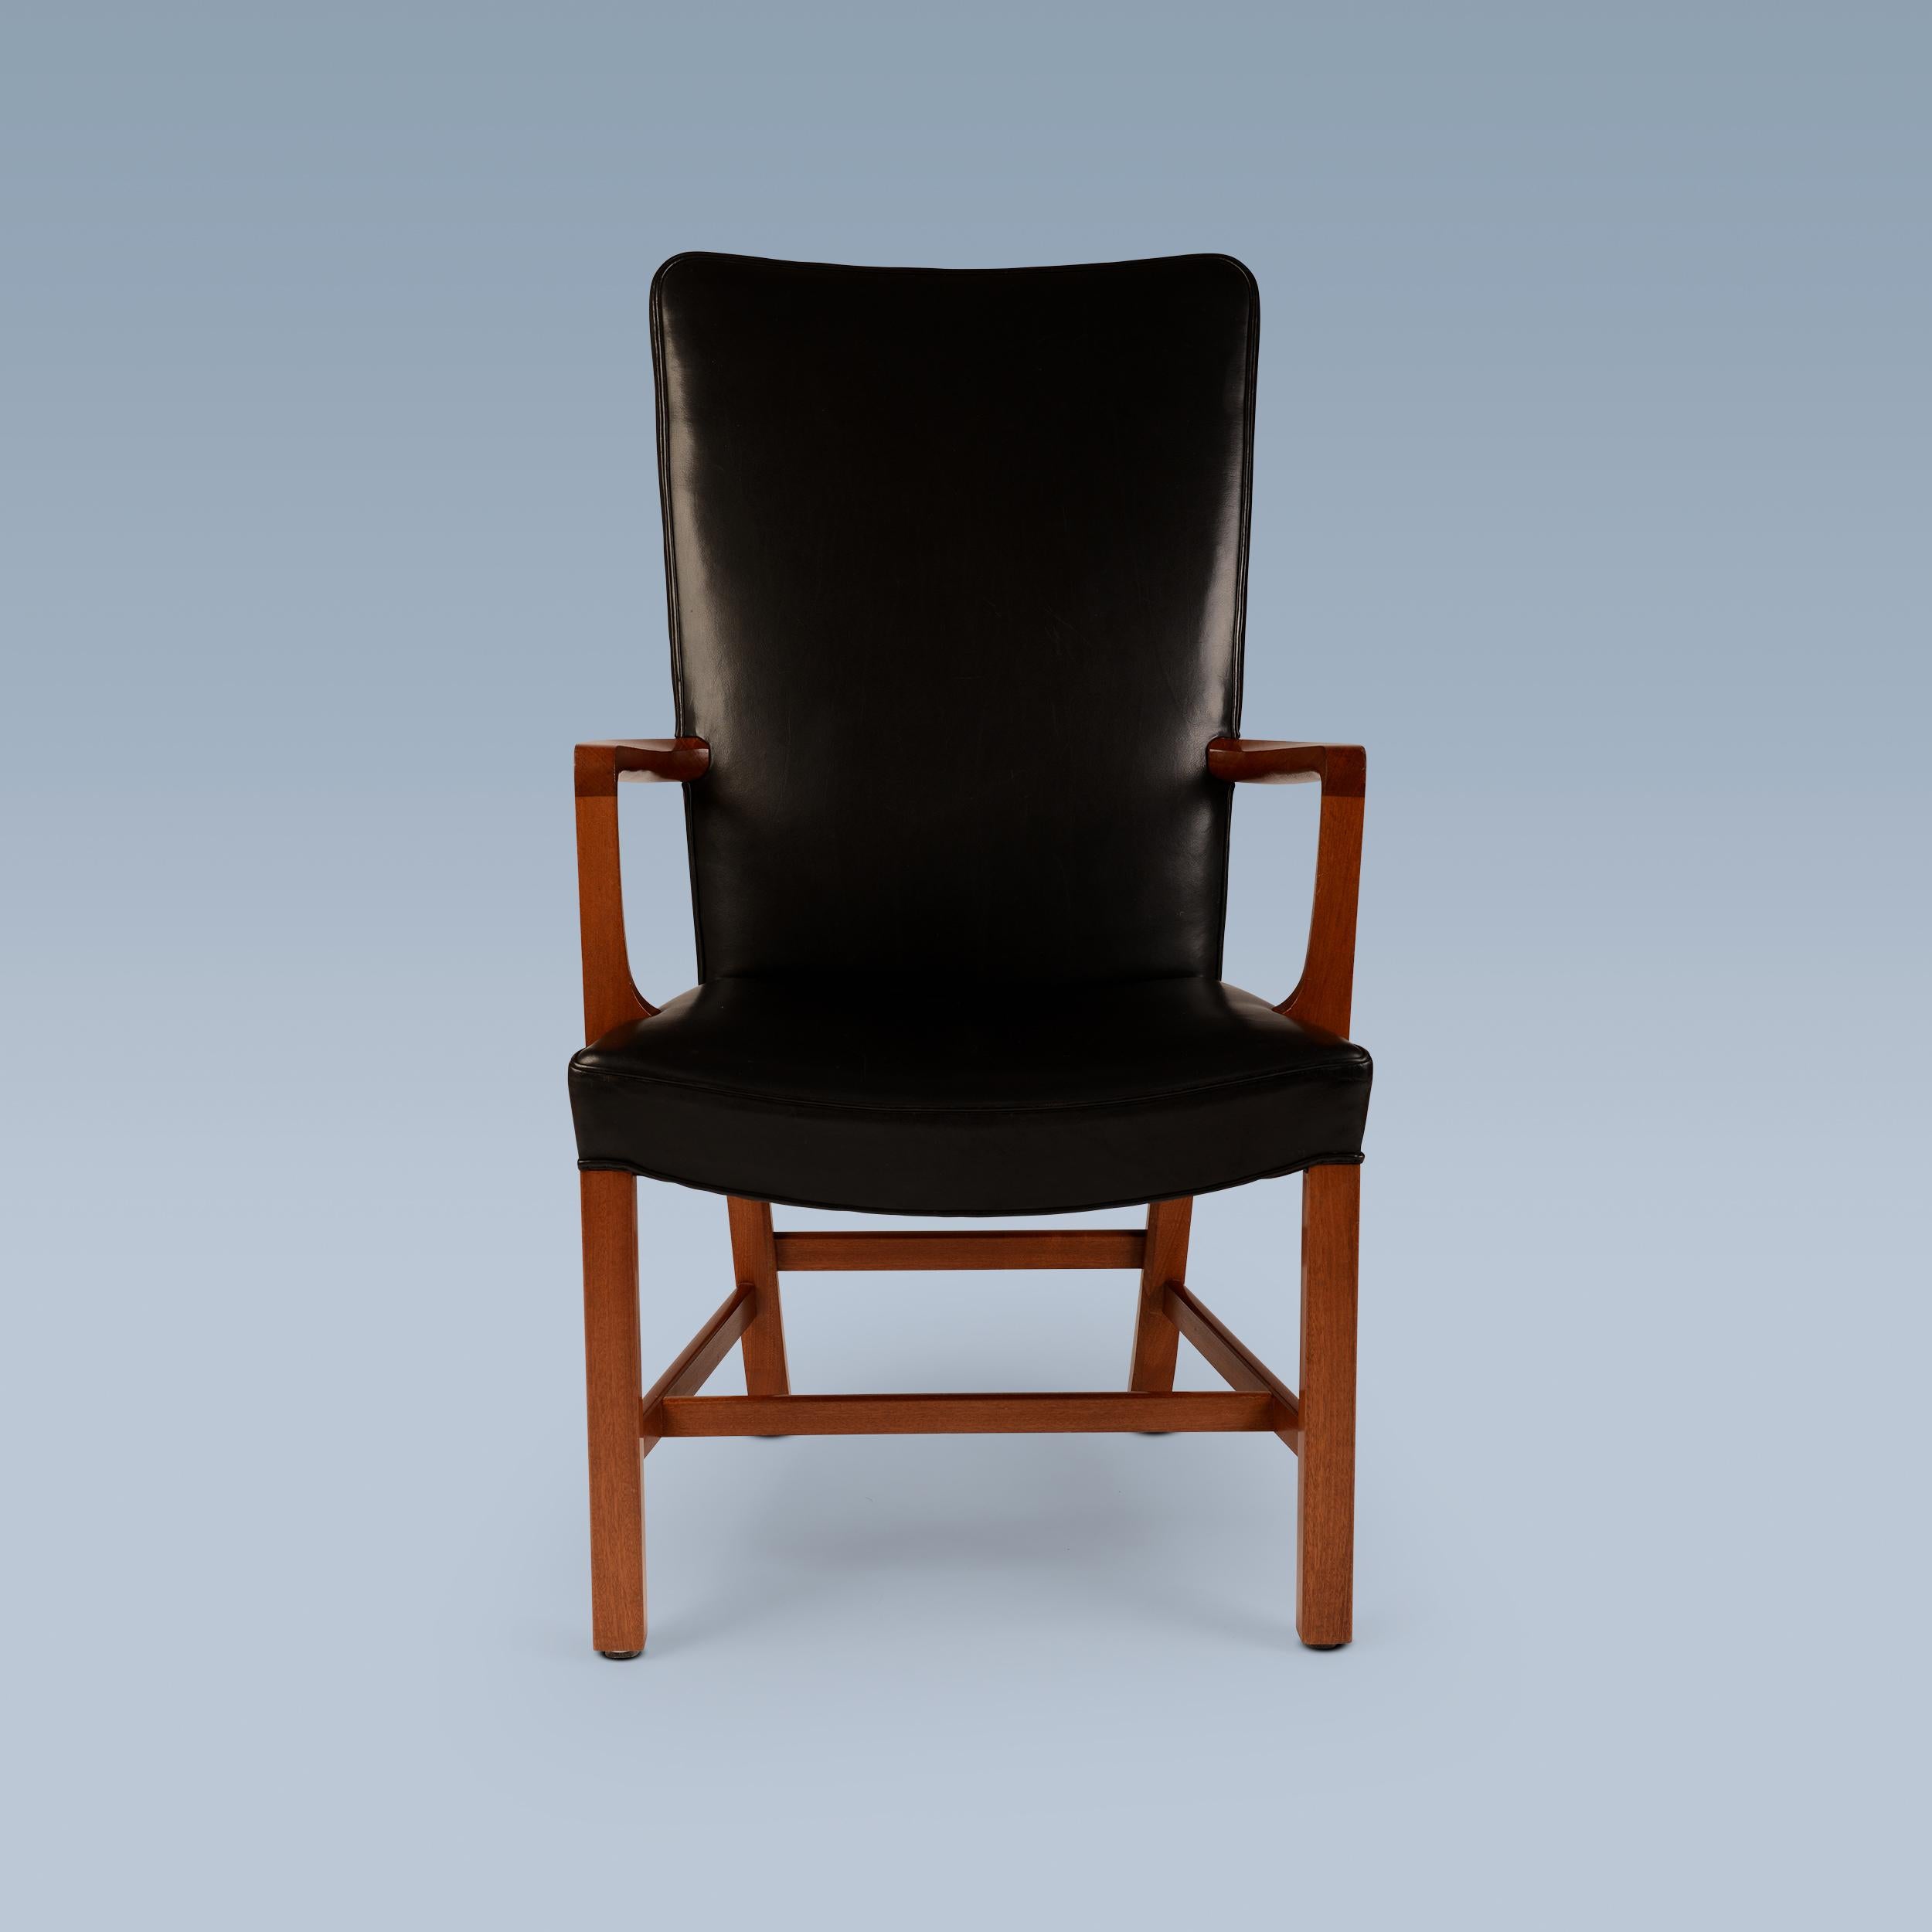 Ce fauteuil à haut dossier en acajou a été conçu par Kaare Klint (1888-1954) en 1939.
Il a été fabriqué par Rud. Ébénistes Rasmussen, Danemark.
Le modèle est appelé 